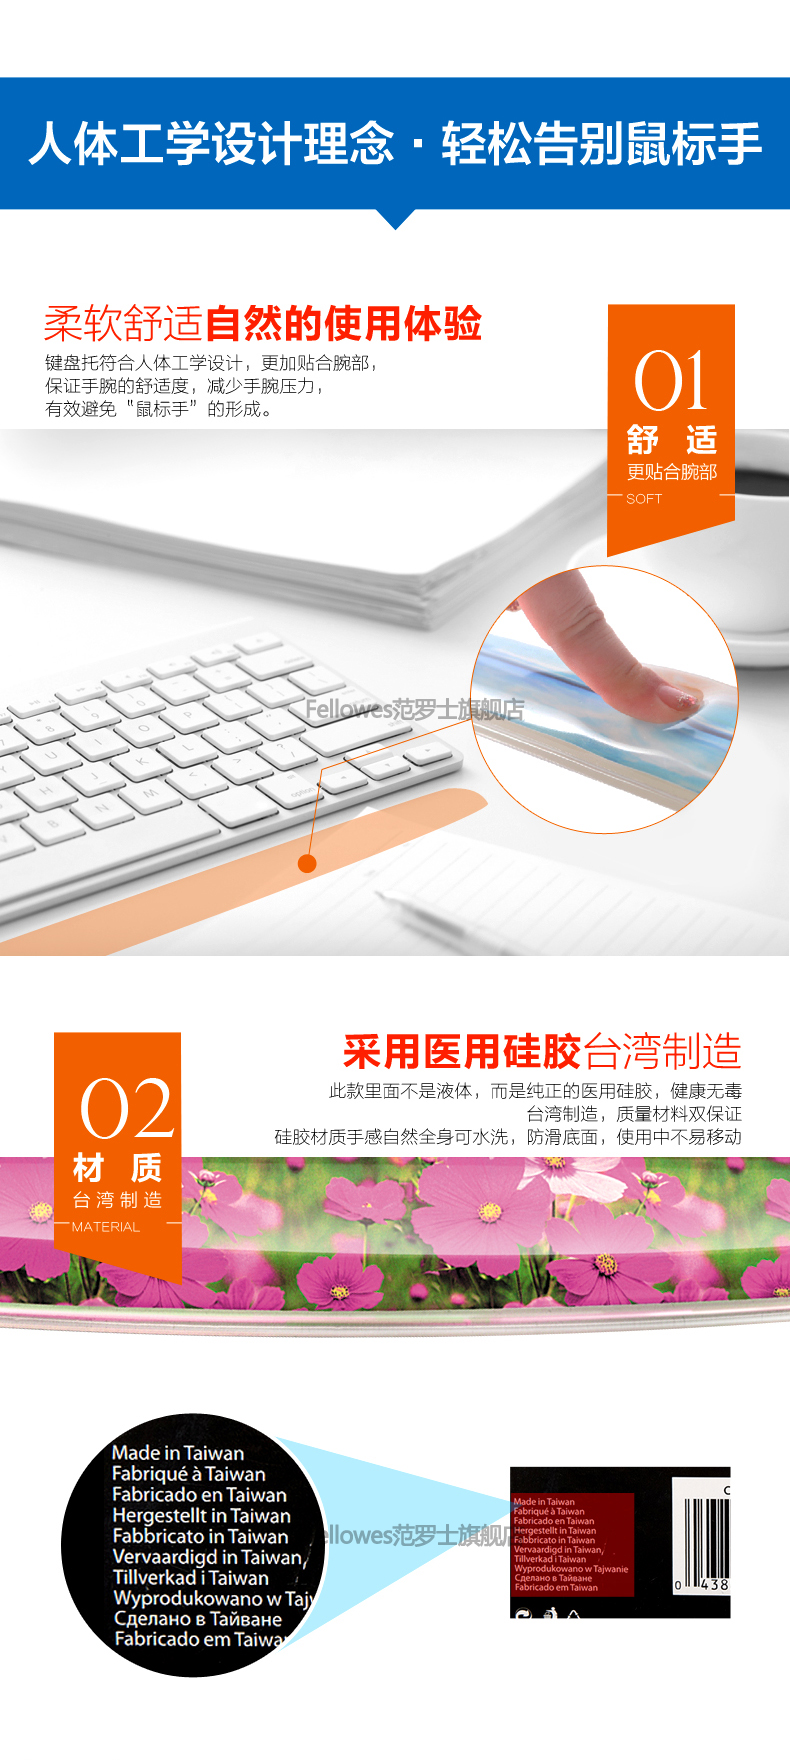 【邮掌柜】范罗士/Fellowes 硅胶键盘腕托 键盘手枕键盘垫 91791台湾生产